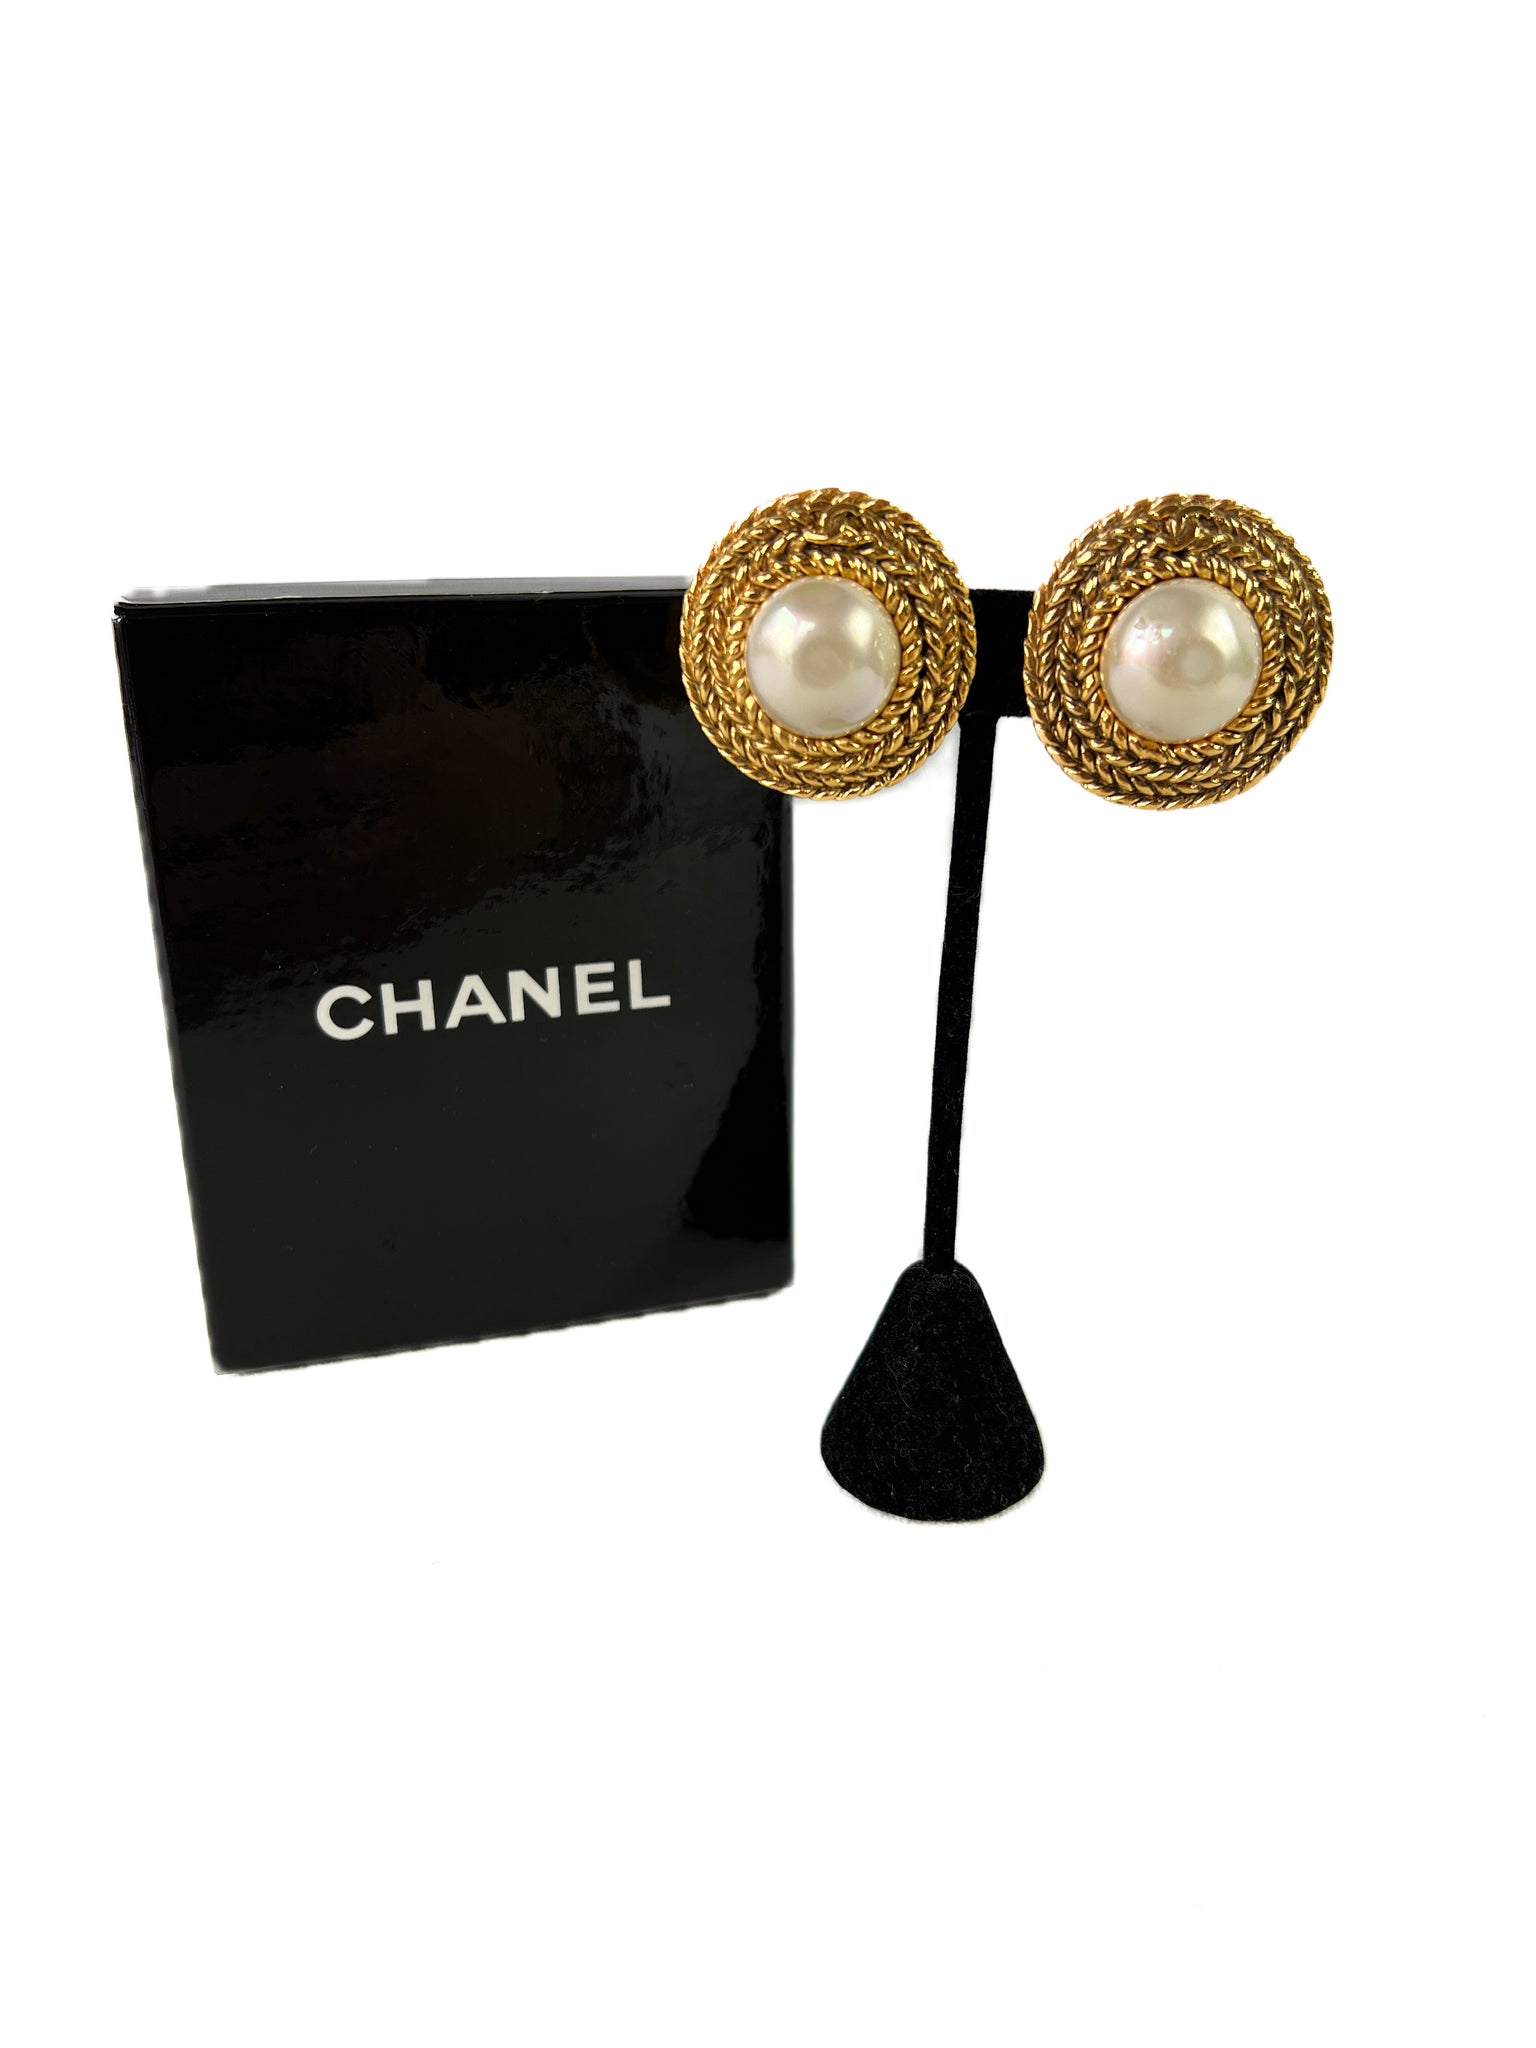 DG Faux Pearl Earrings in Gold - Dolce Gabbana